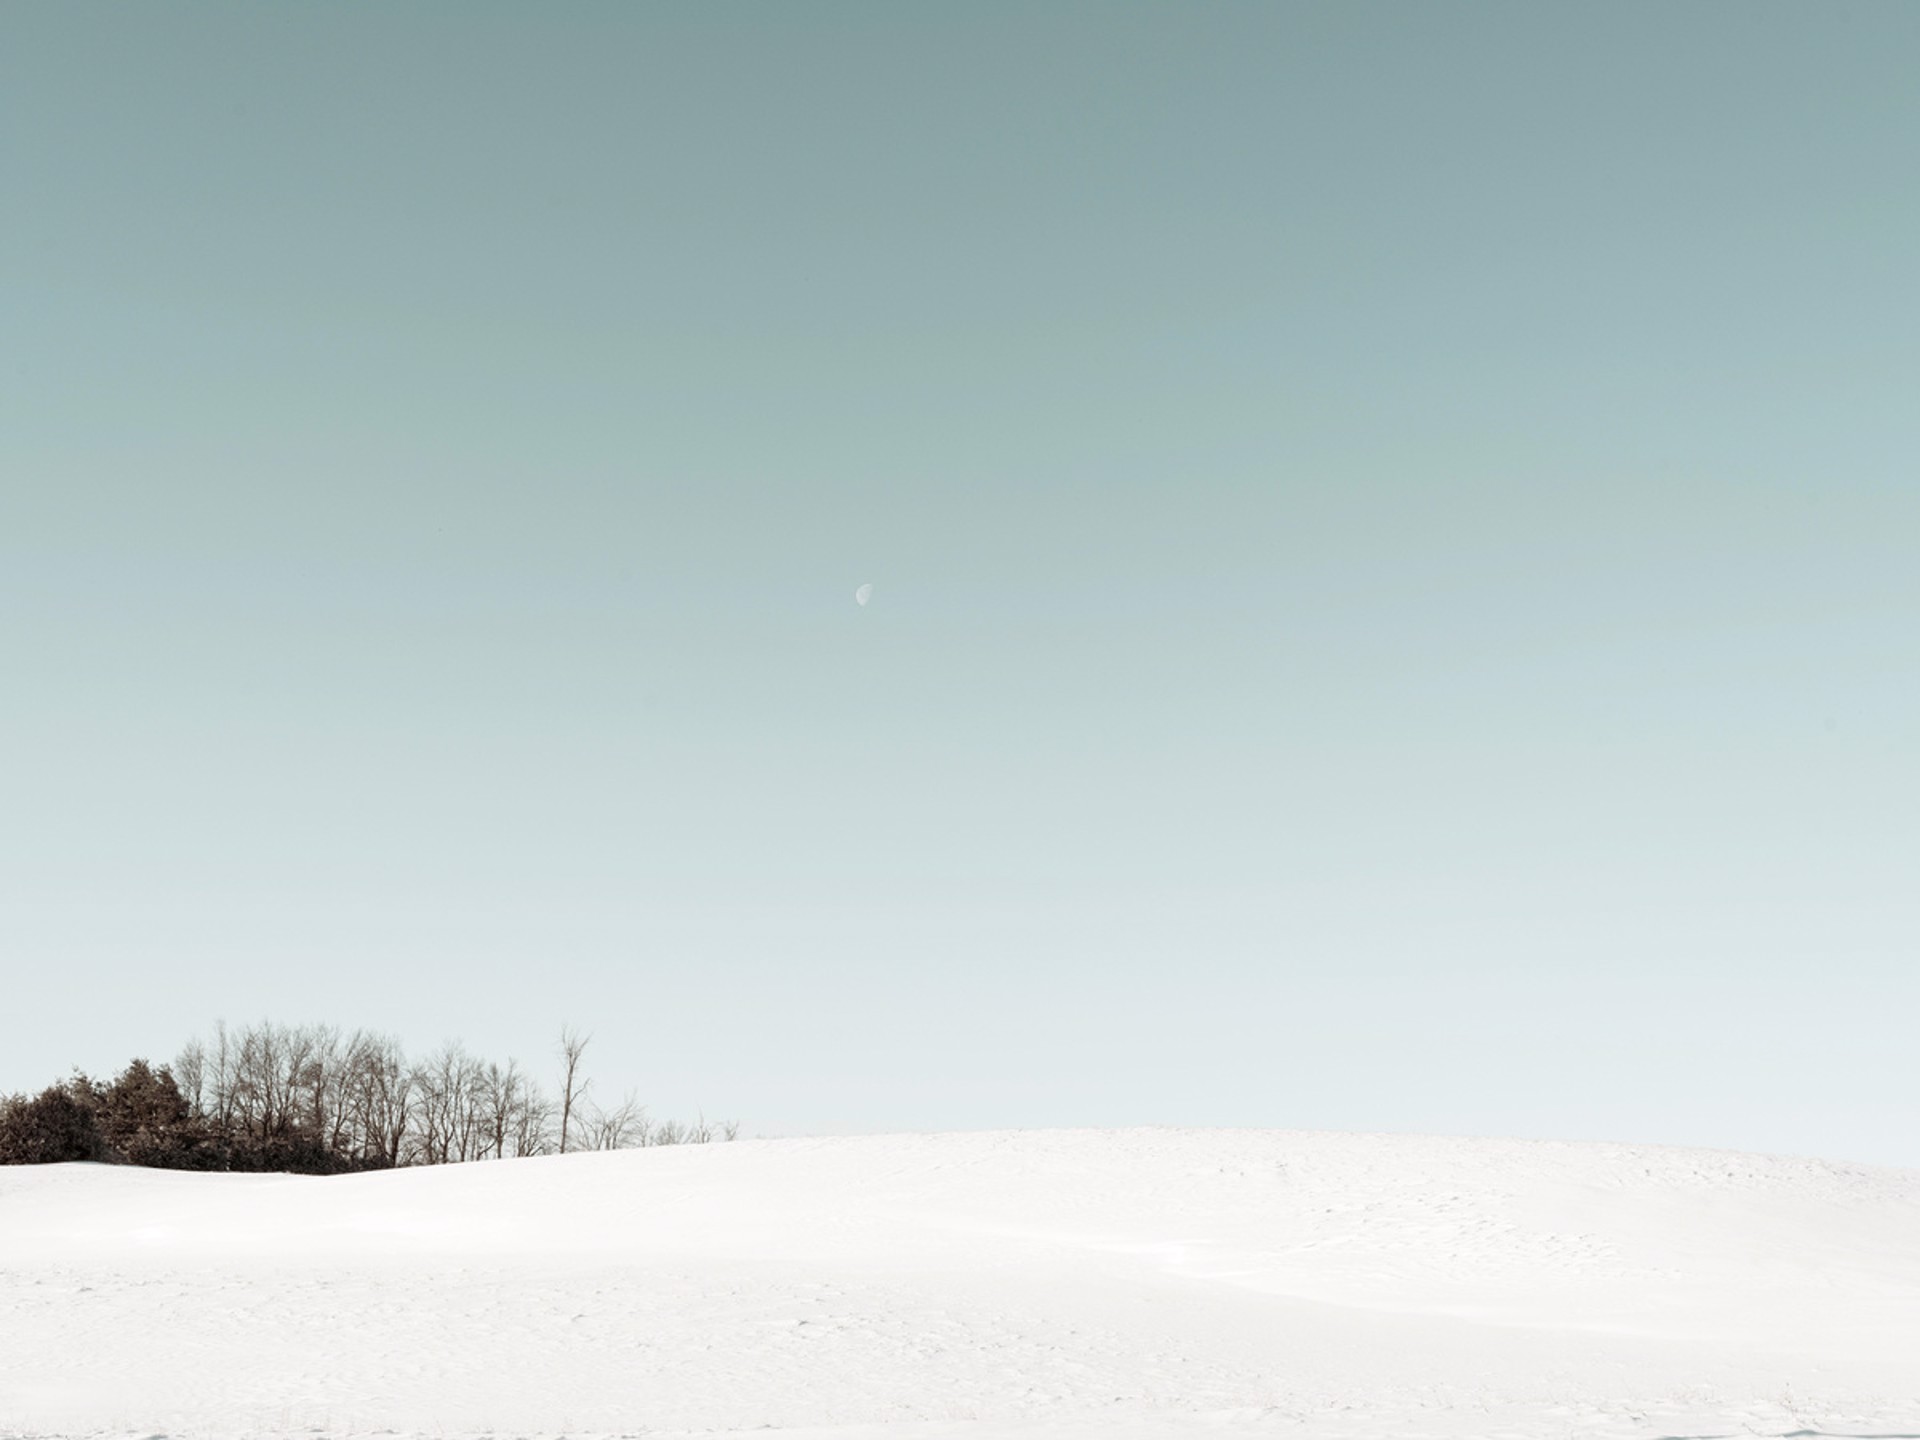 Scenes of Winter #5 by Peter McLennan